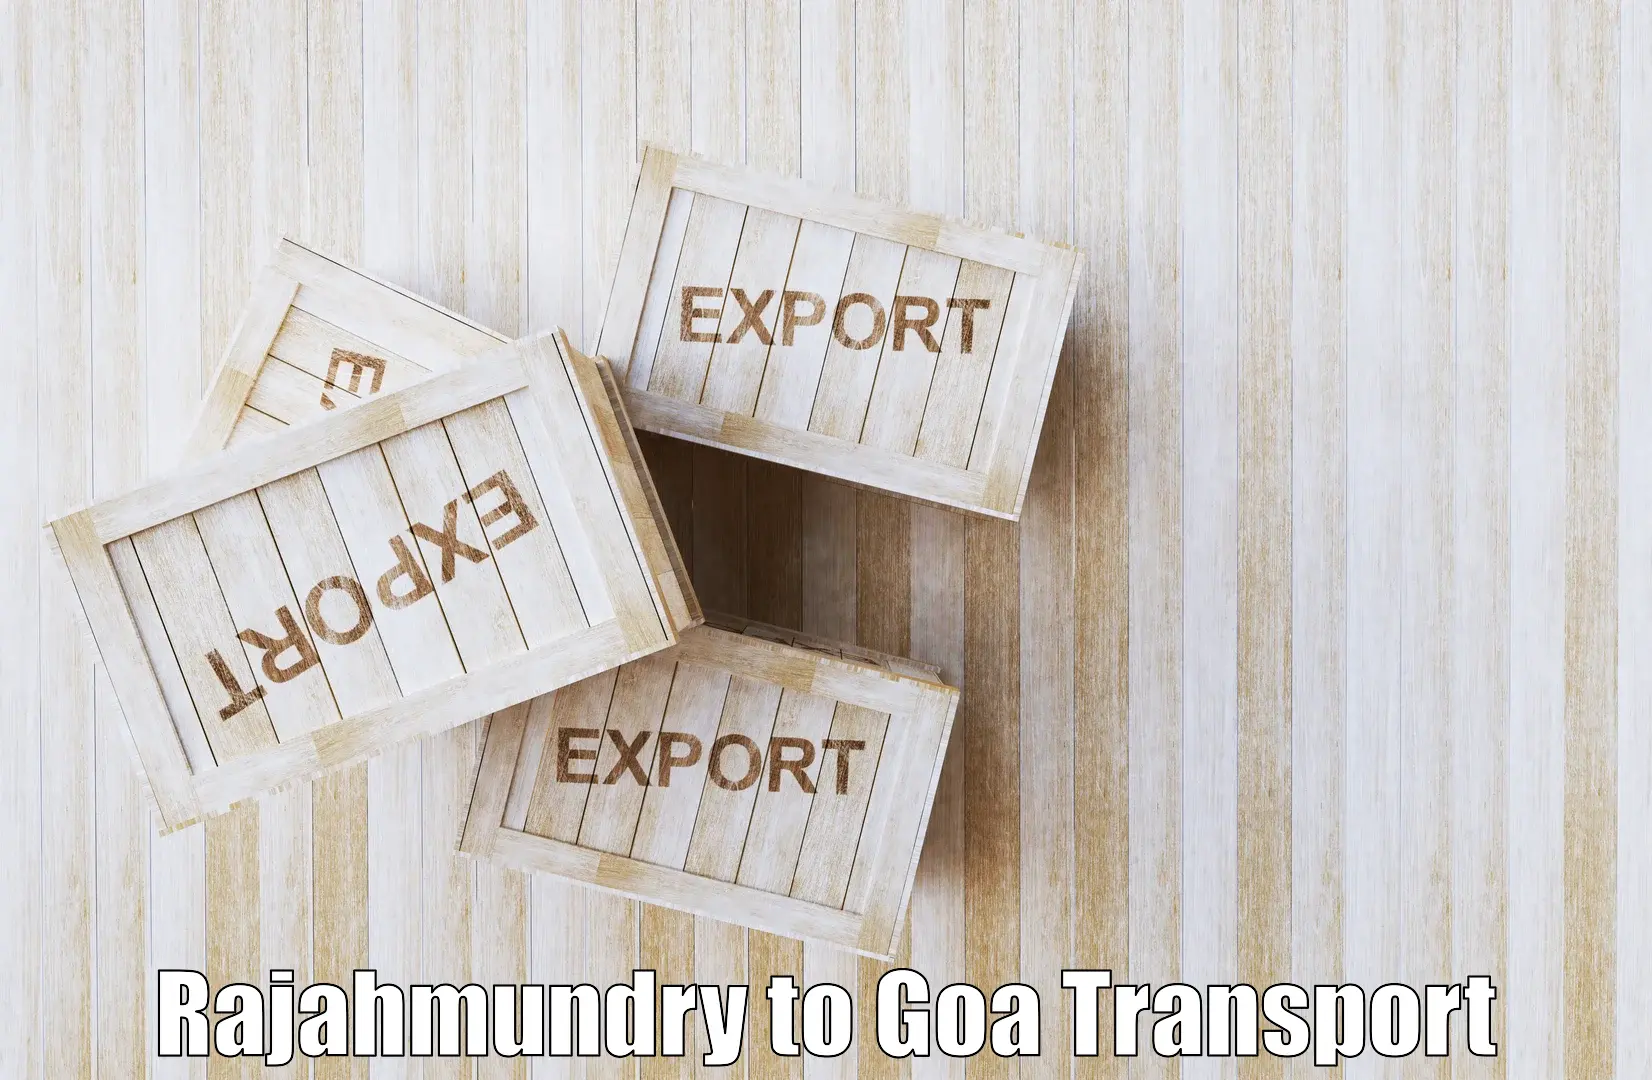 Container transport service Rajahmundry to Panjim